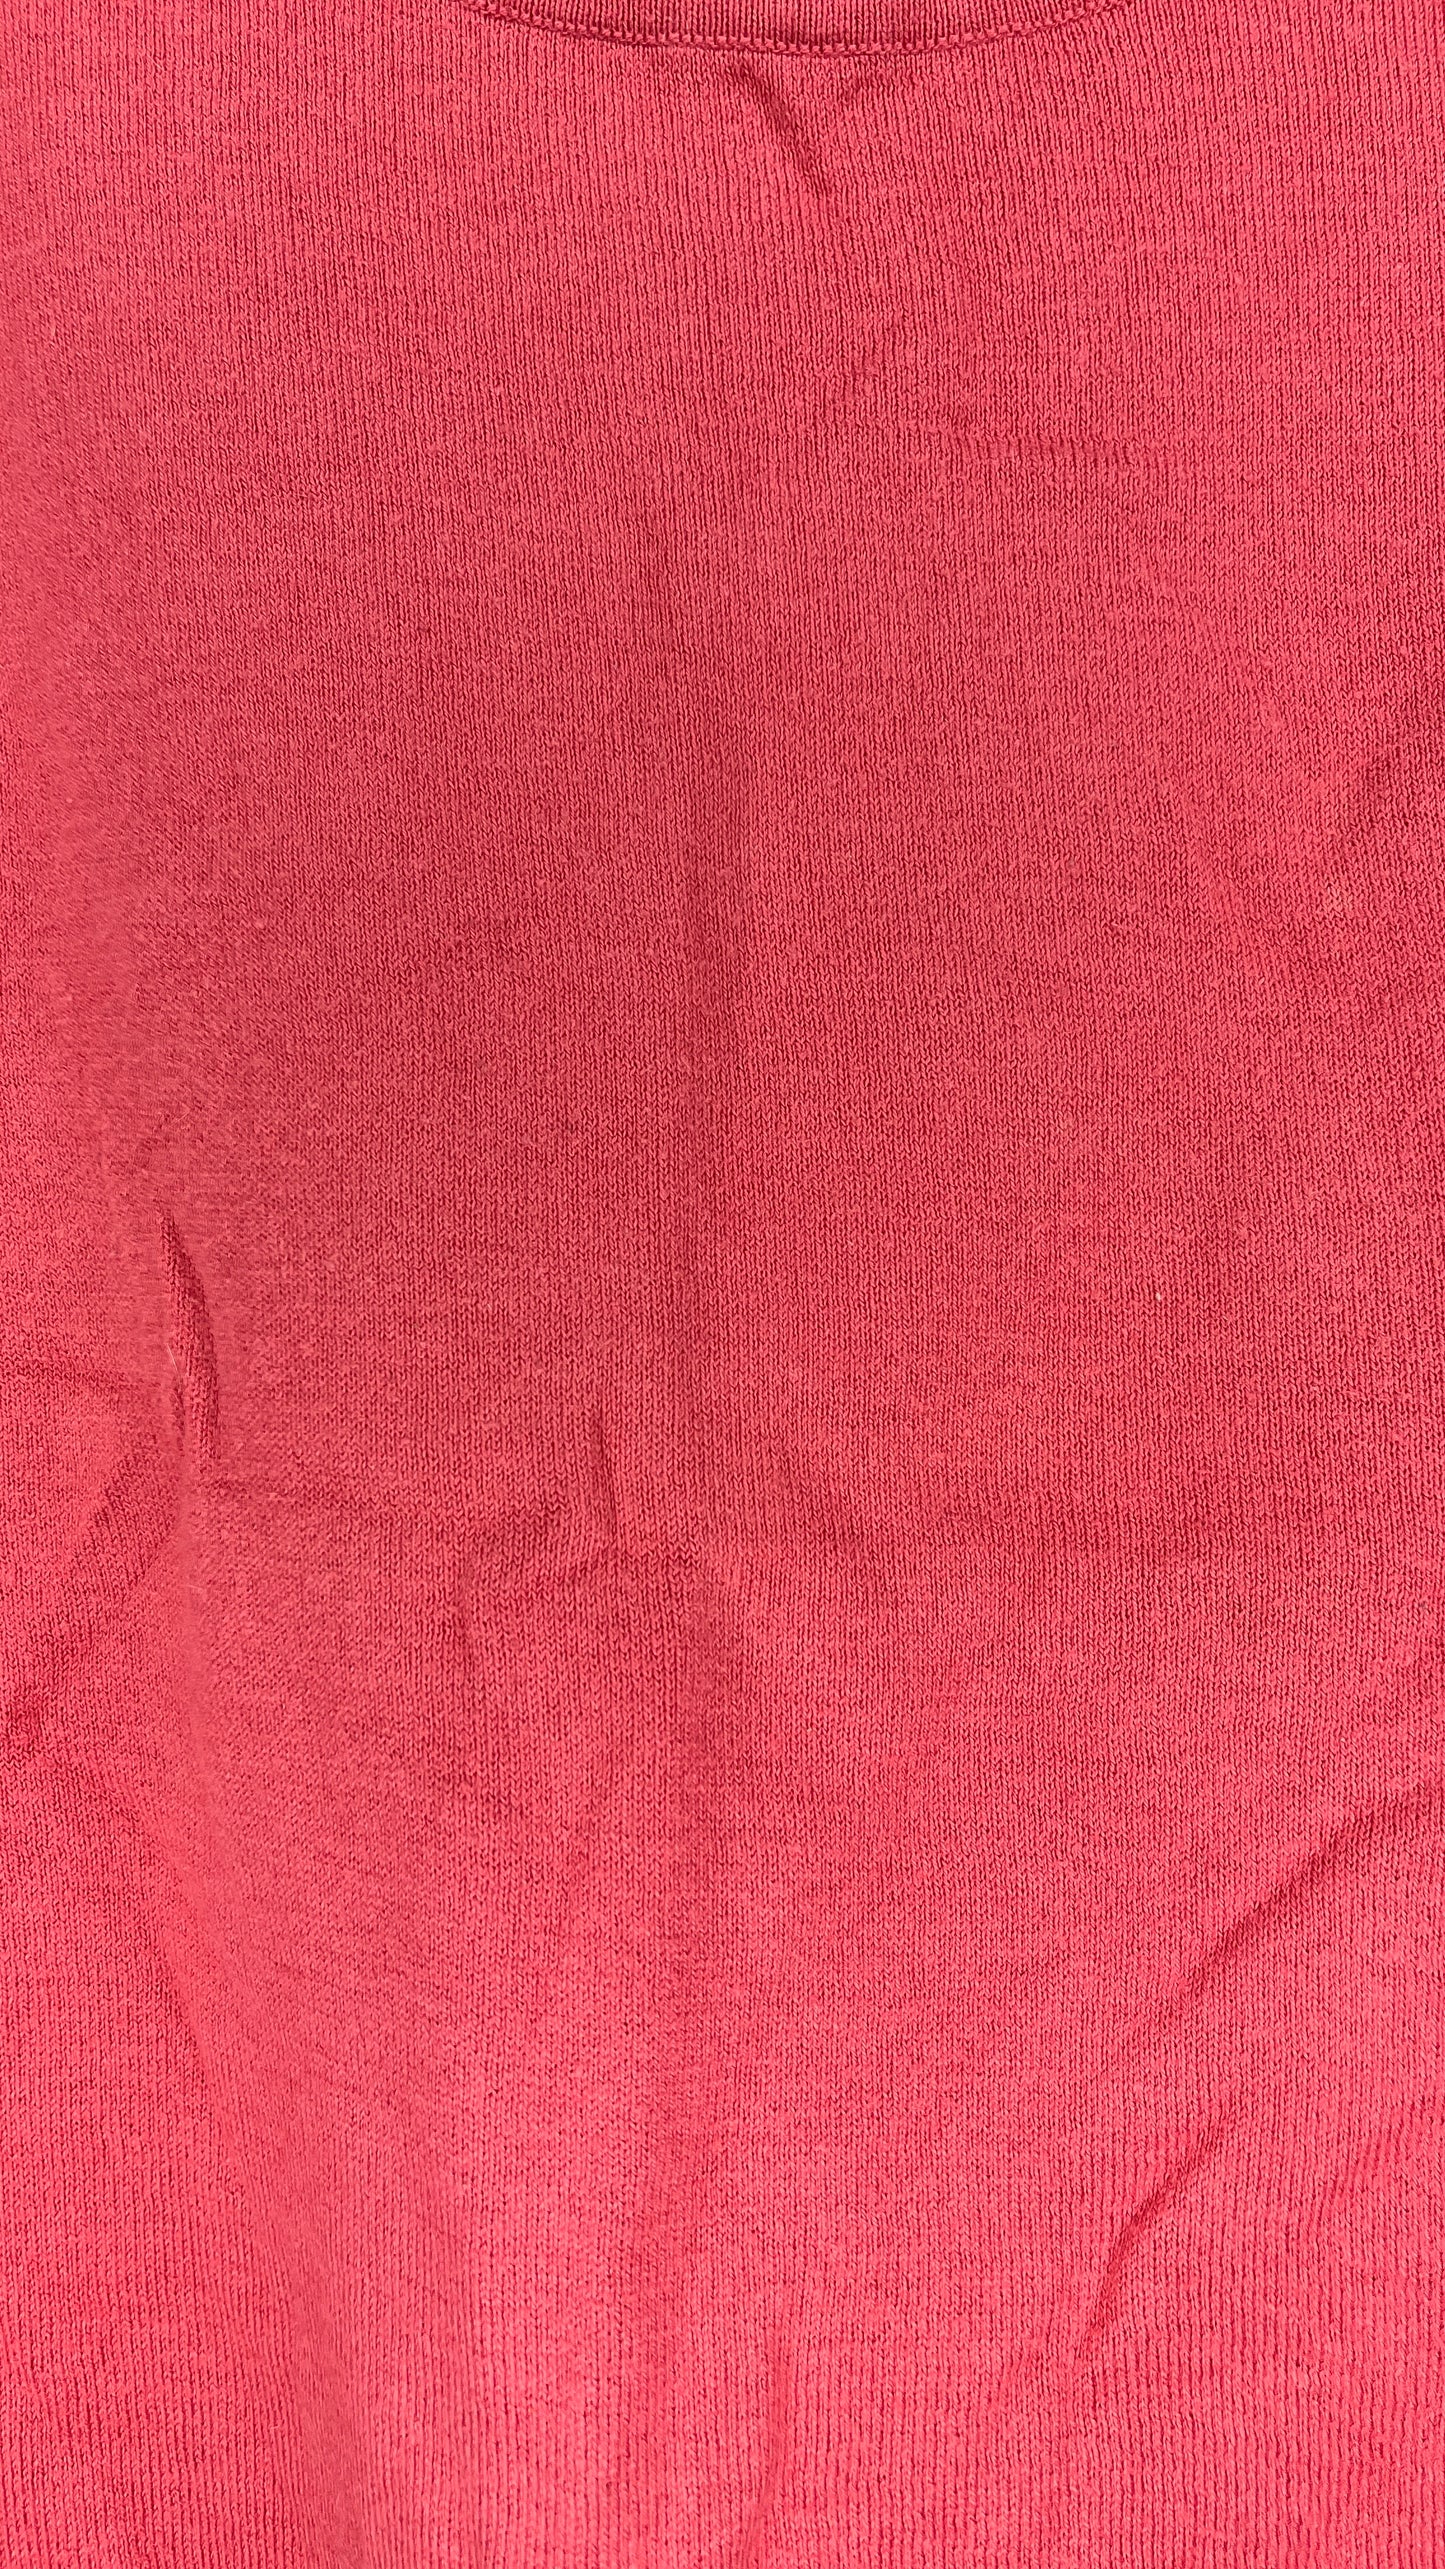 Talbots Tank Top Knit Pink Size 1X SKU 000418